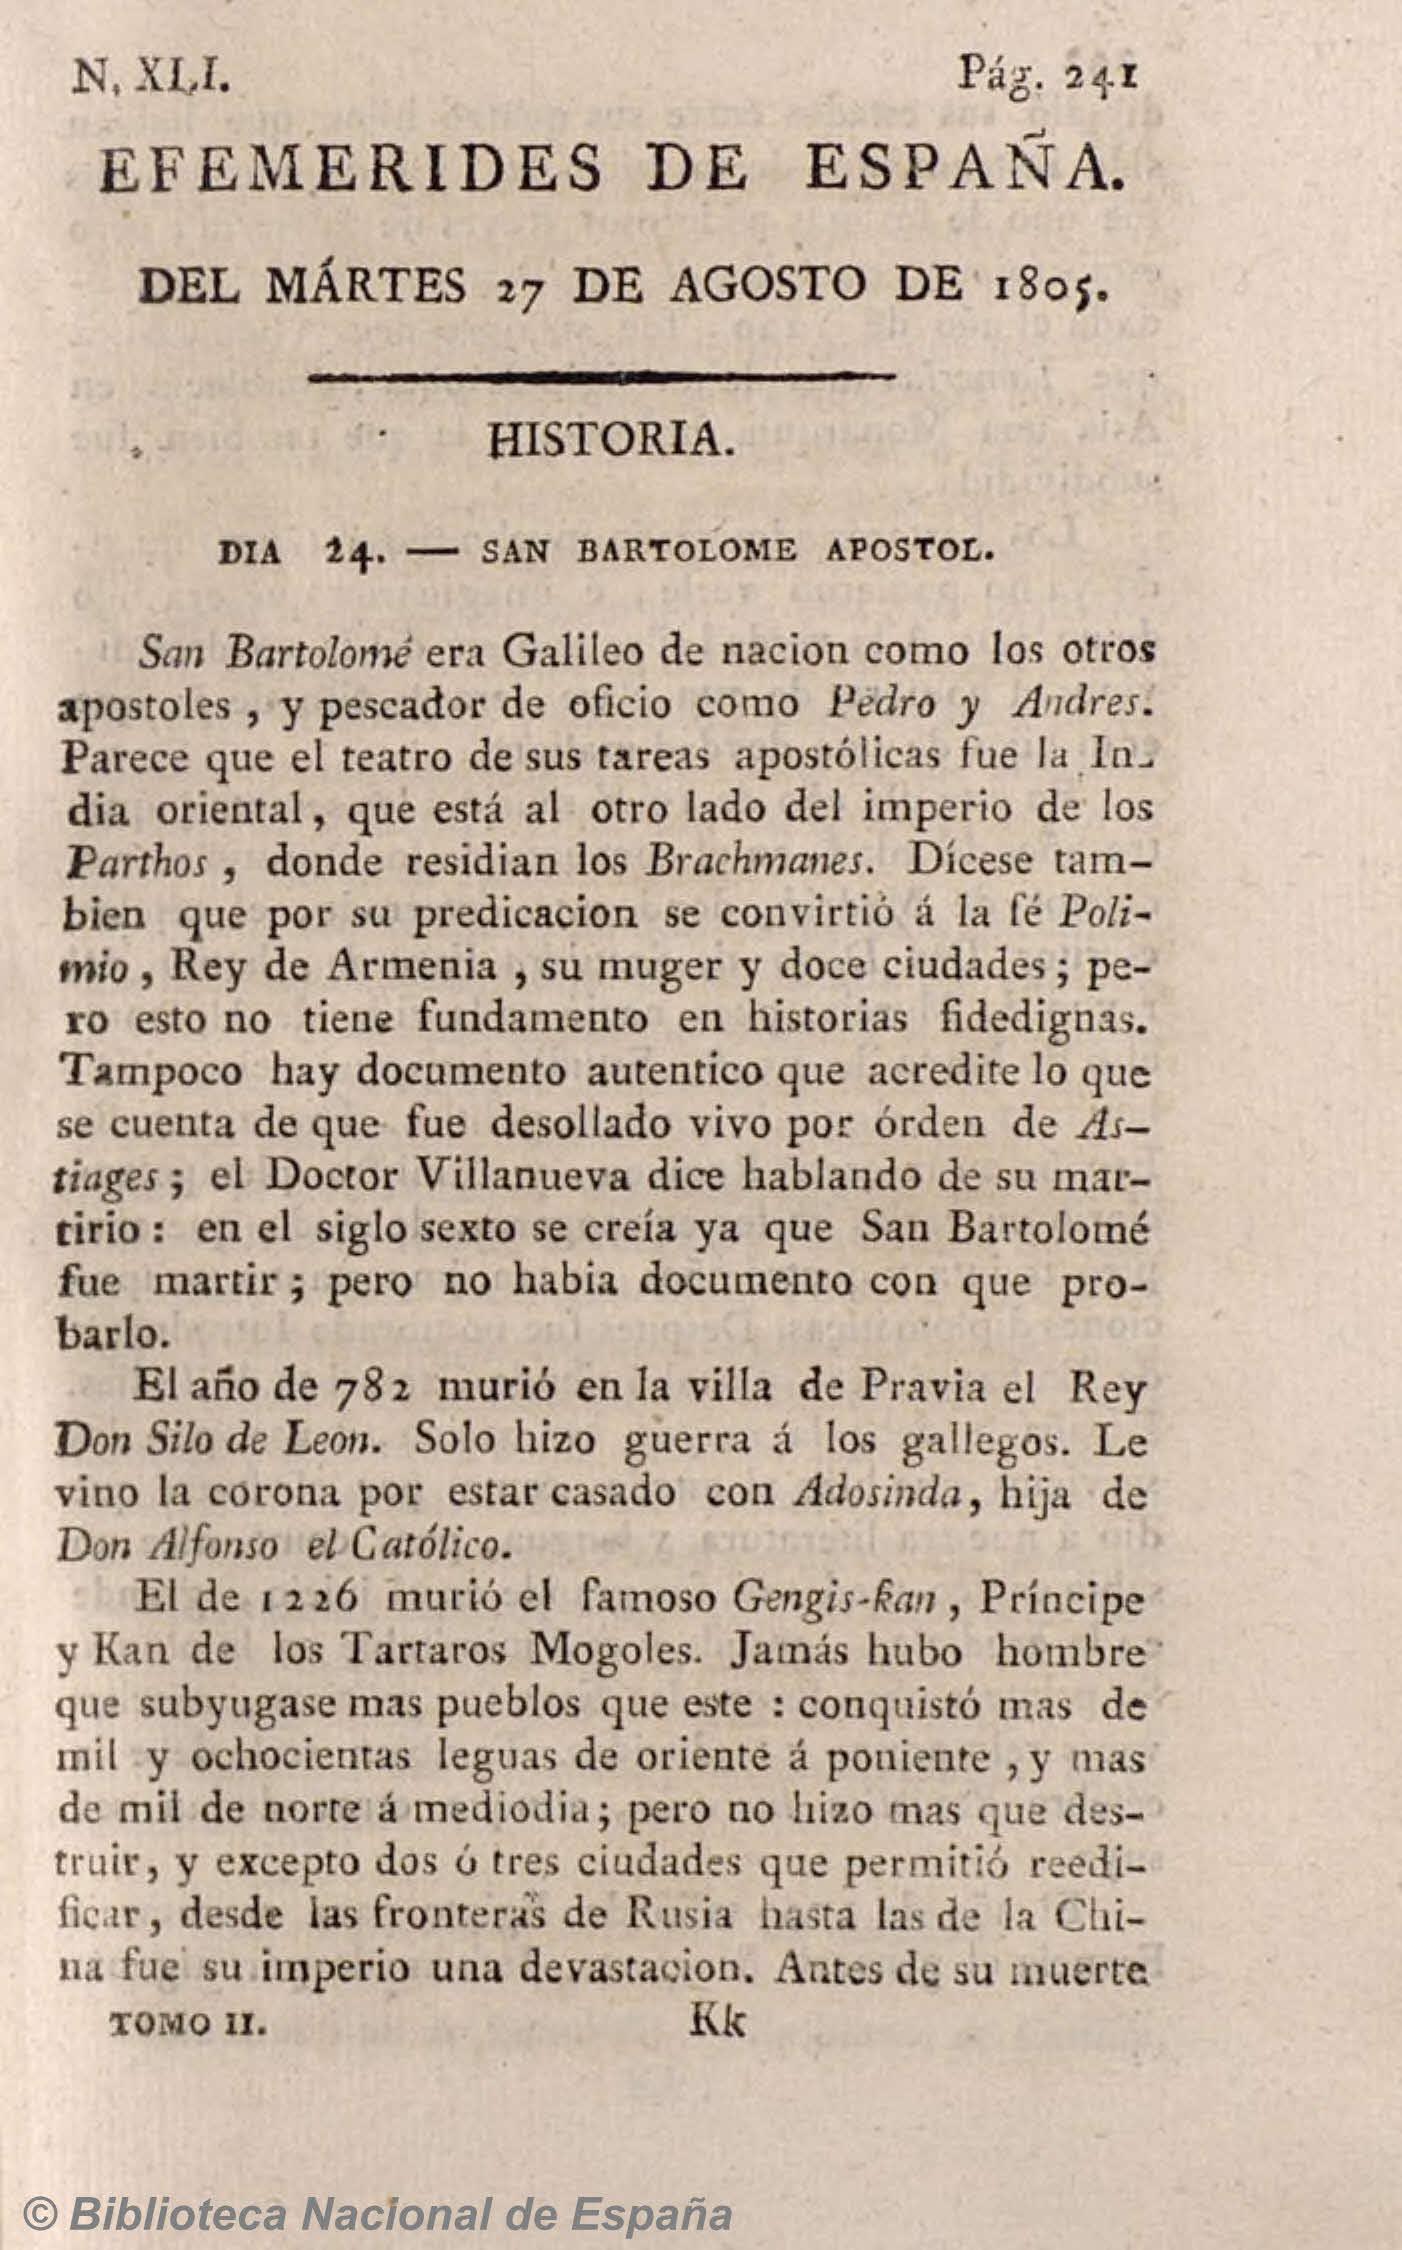 Prospecto del Anti-Quijote [Carta undécima en respuesta al Anti-Quijote]